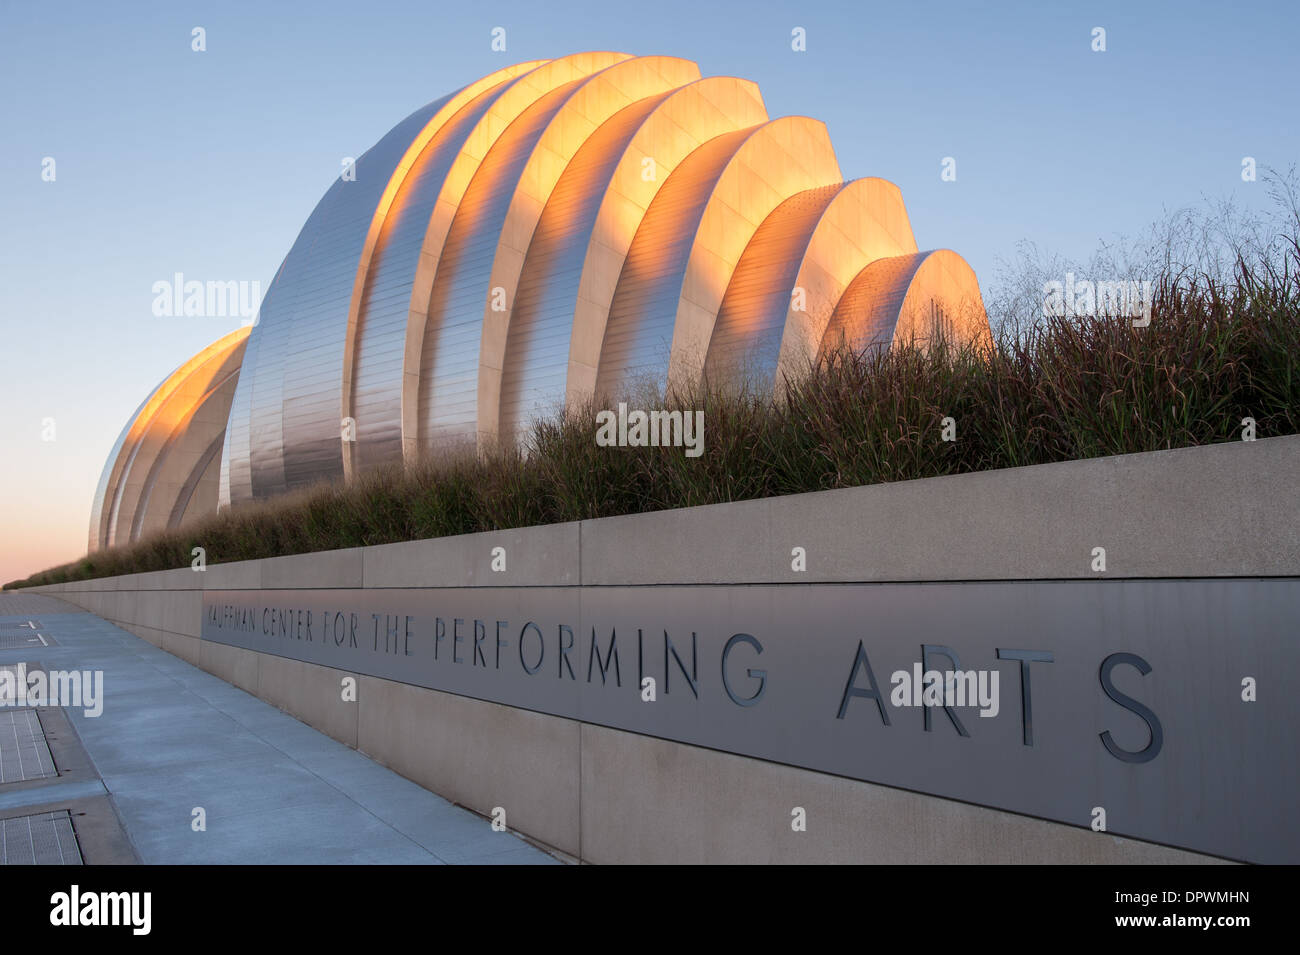 Architektonische Foto von der Außenseite des Kauffman Center for the Performing Arts in Kansas City, Missouri. Stockfoto